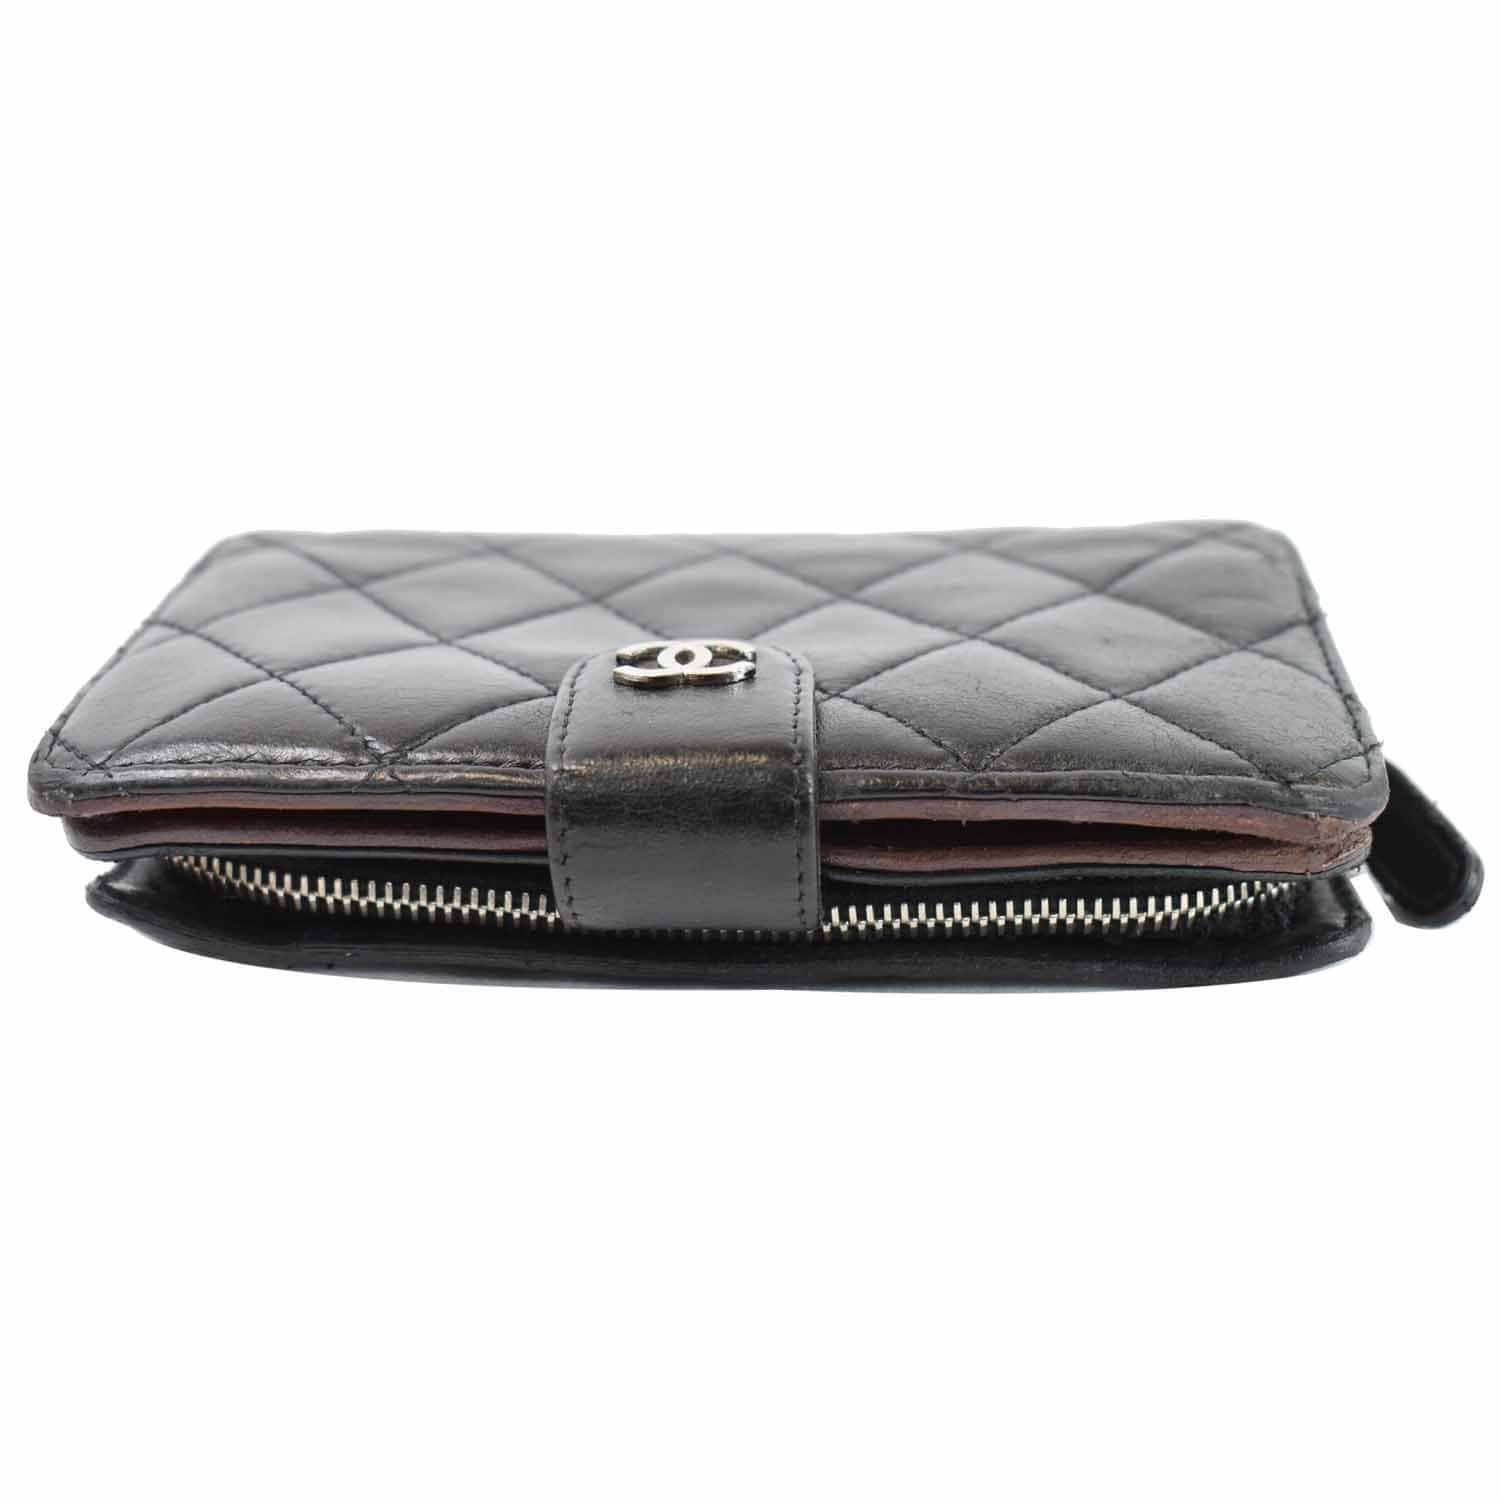  CHANEL - Women's Handbags, Purses & Wallets / Women's